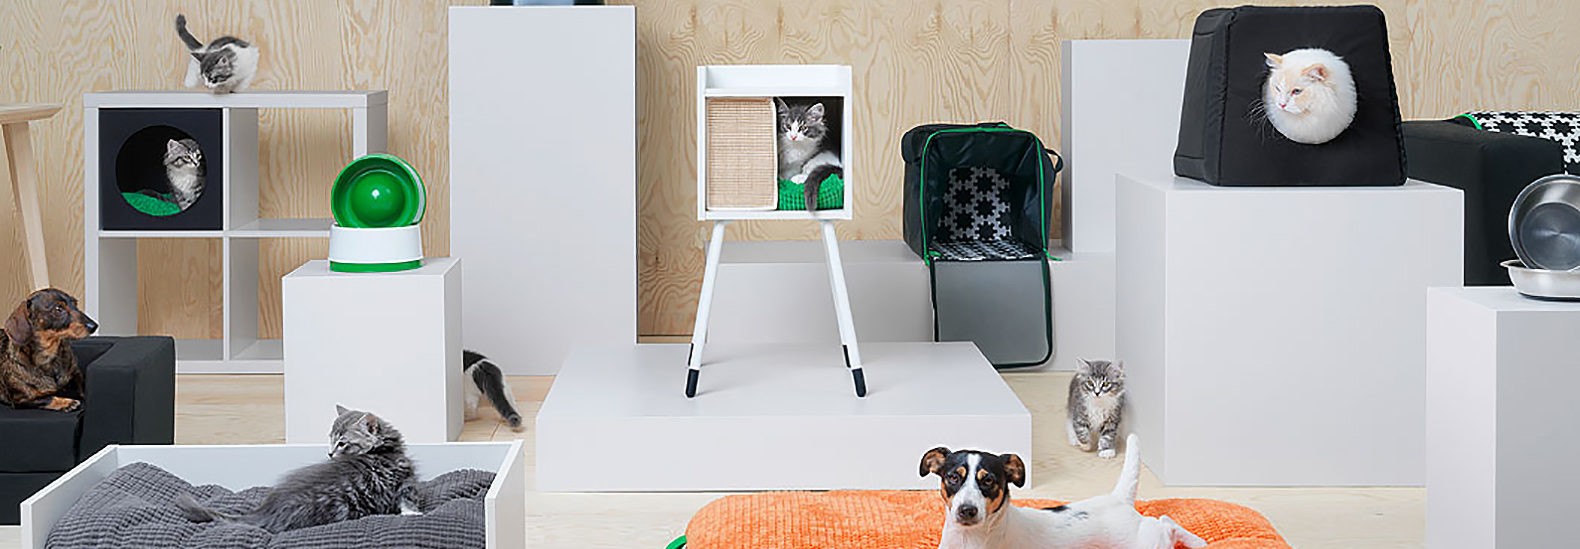 Ikea for pets 